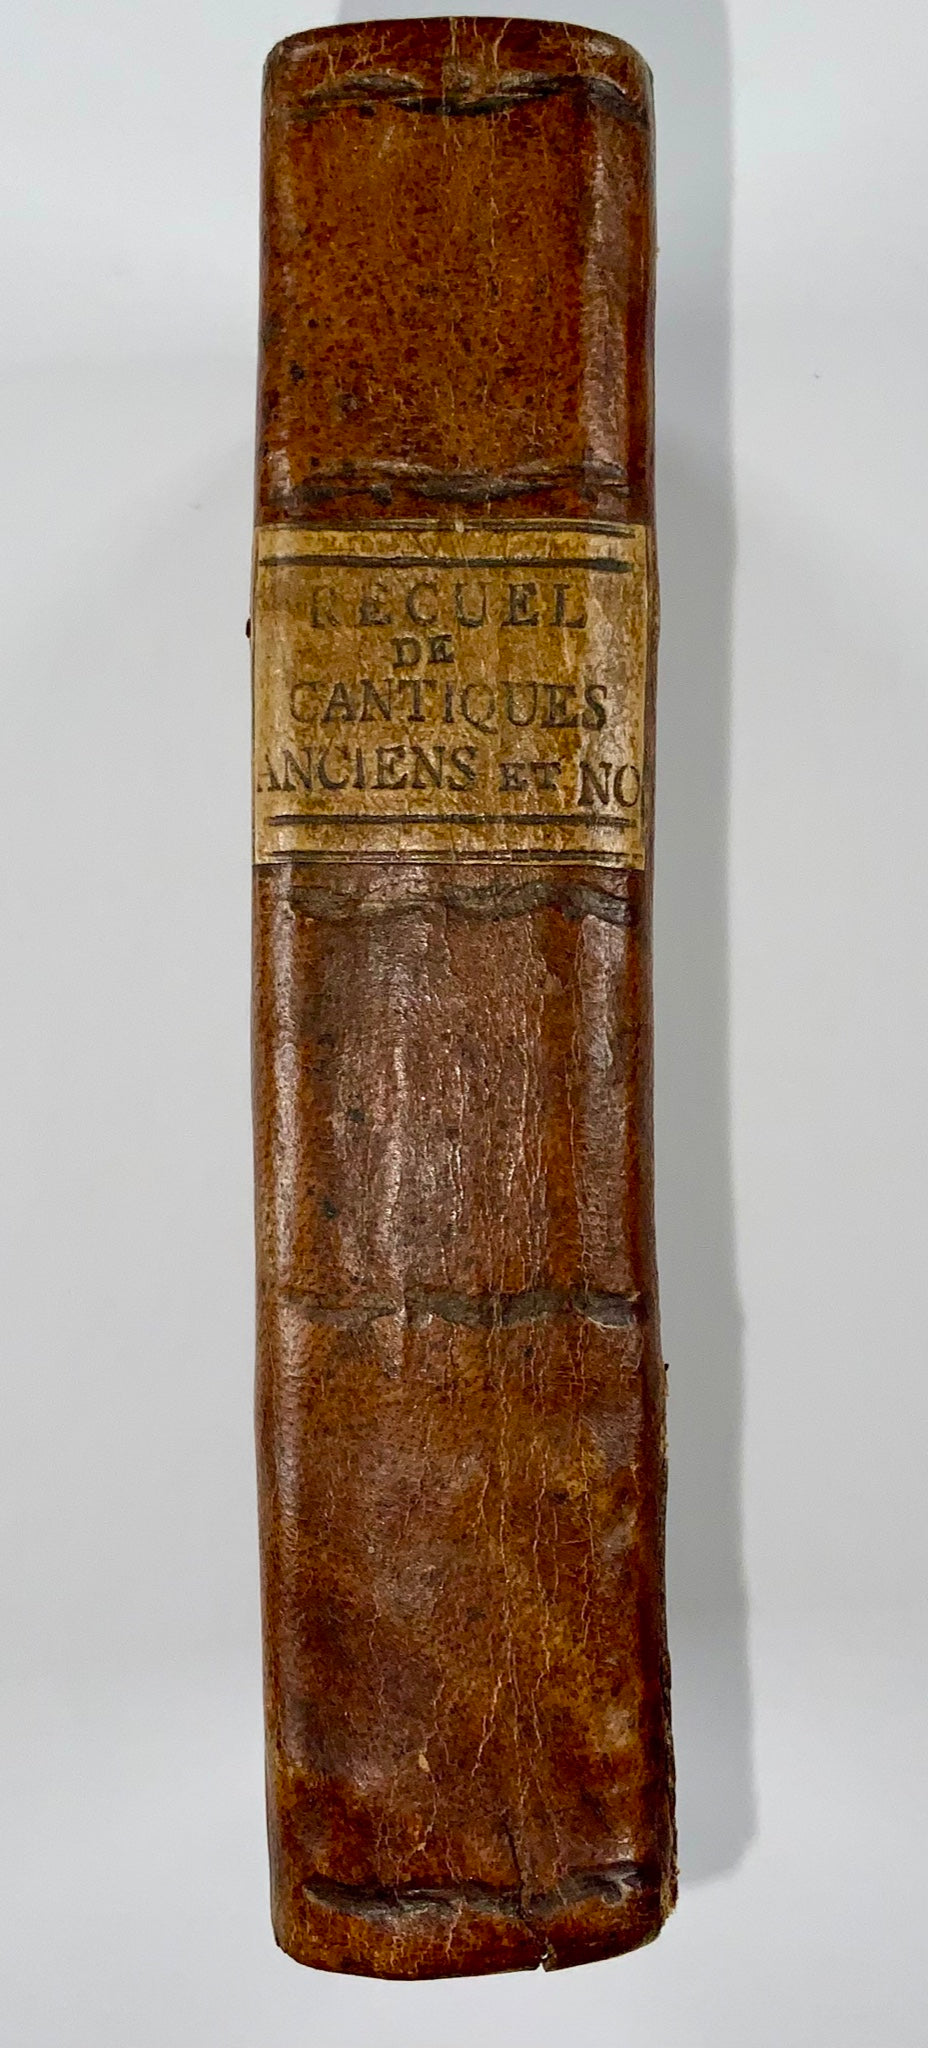 1798 Christian Harmony, Receuil de cantiques, empreinte londonienne, livre